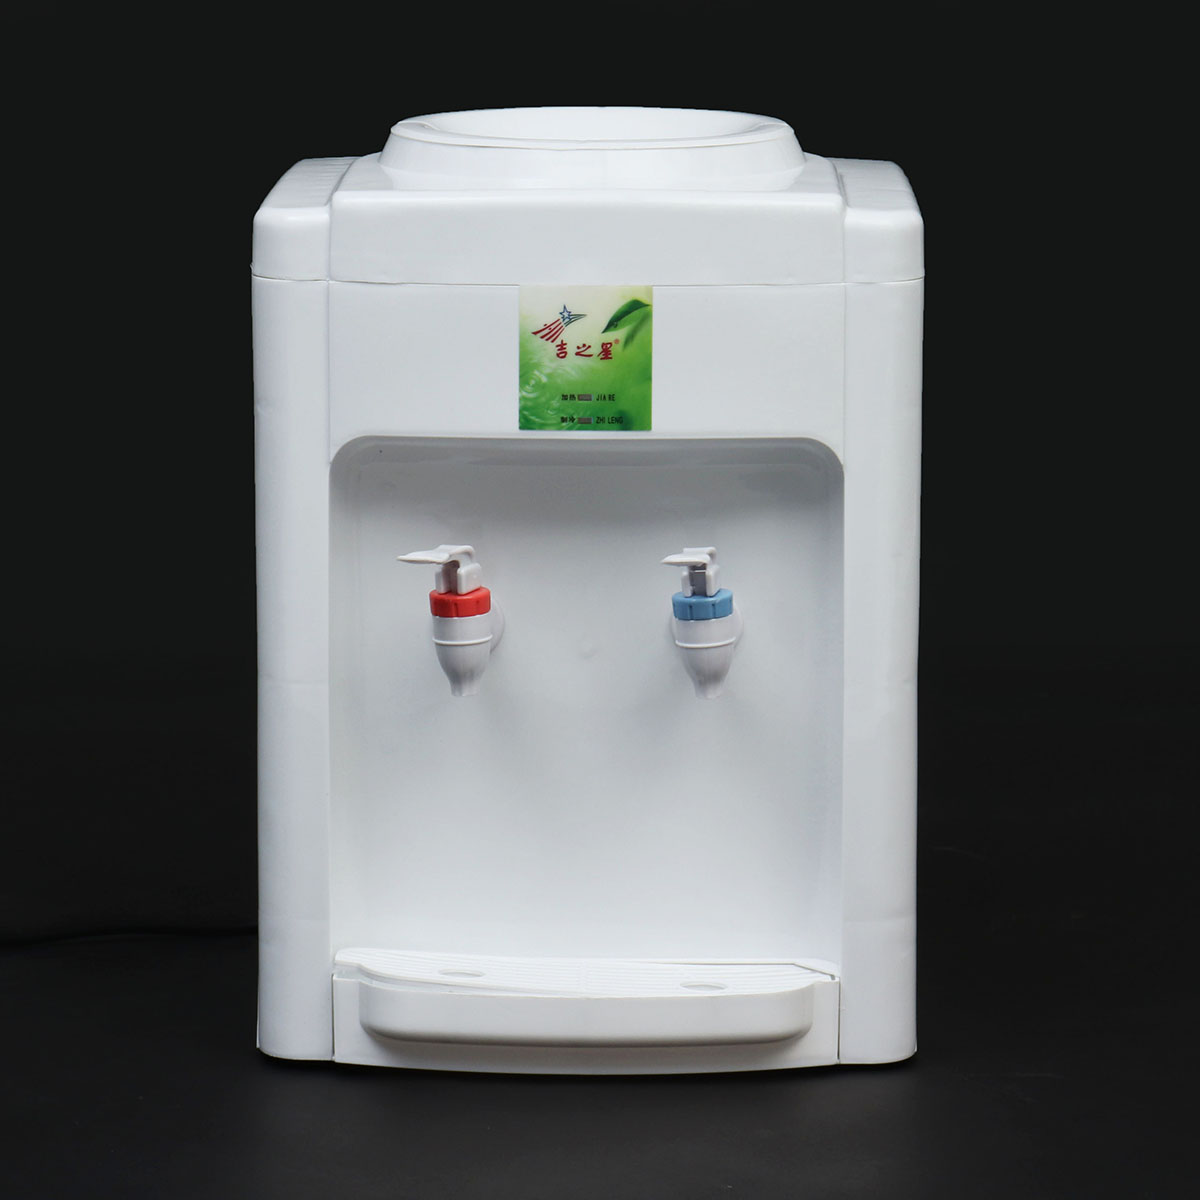 220V-Electric-Cold-Hot-Water-Beverage-Cooler-Dispenser-3-5-Gallon-Home-Office-Use-Desktop-1617196-1